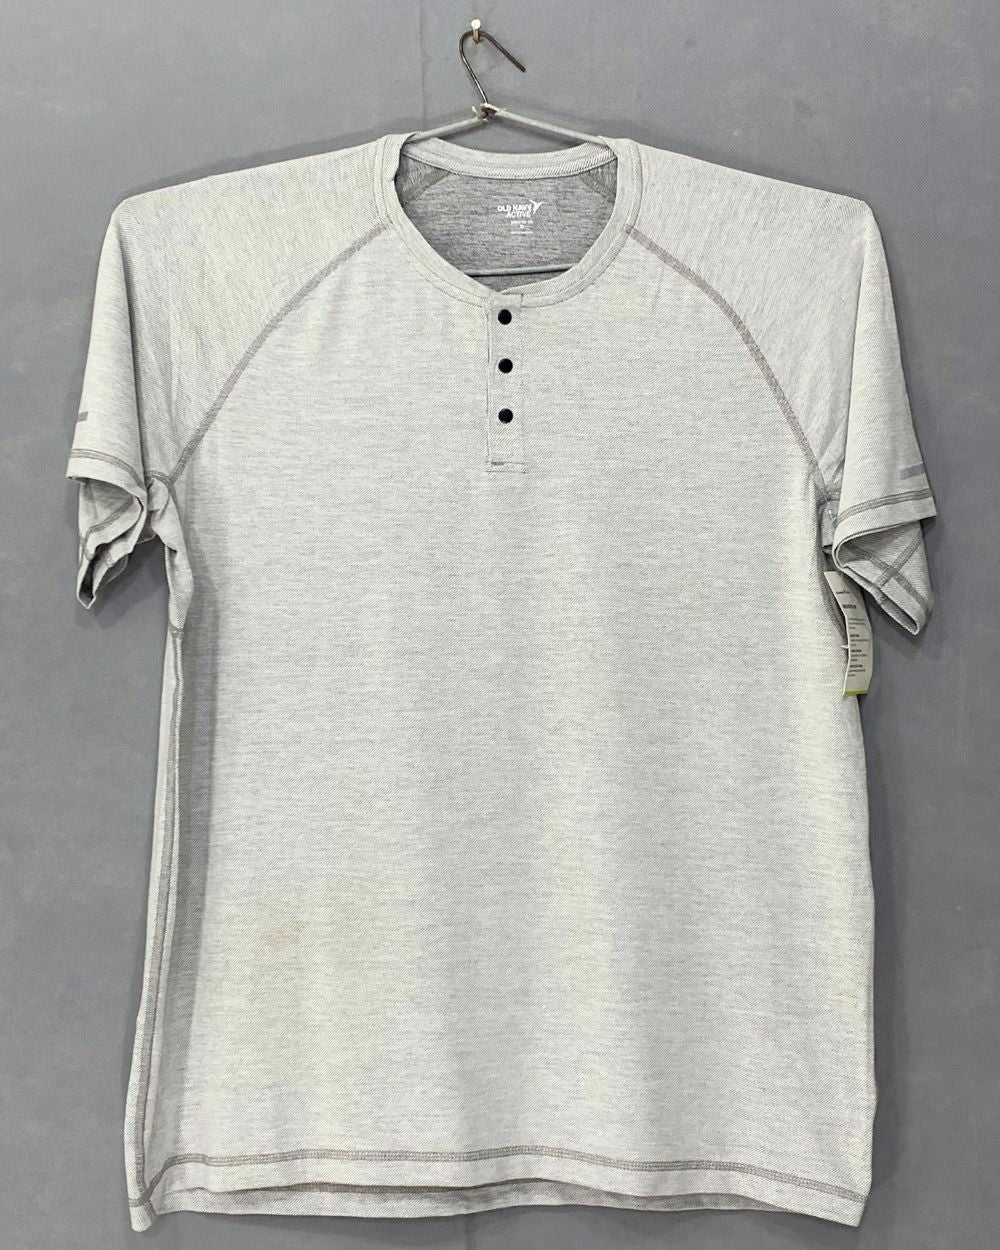 Old Navy Branded Original Cotton T Shirt For Men